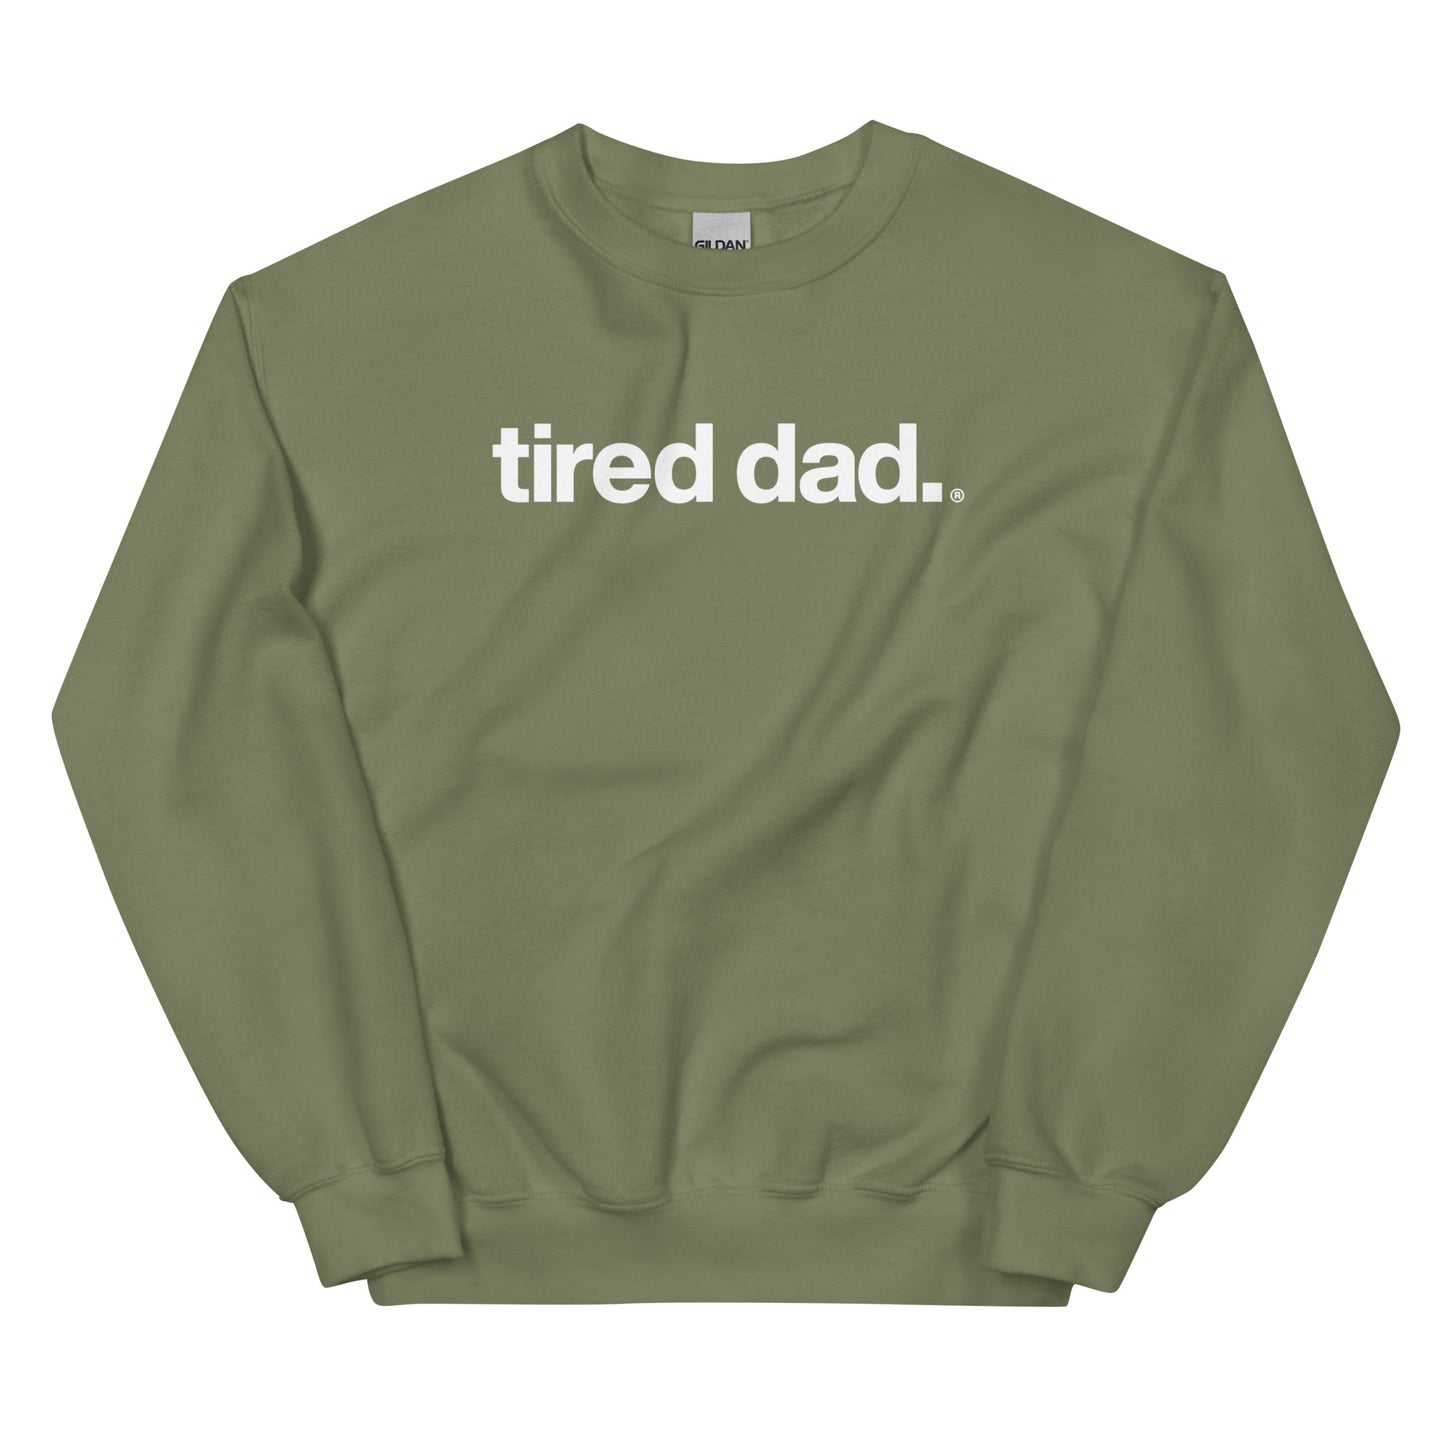 tired dad. sweatshirt